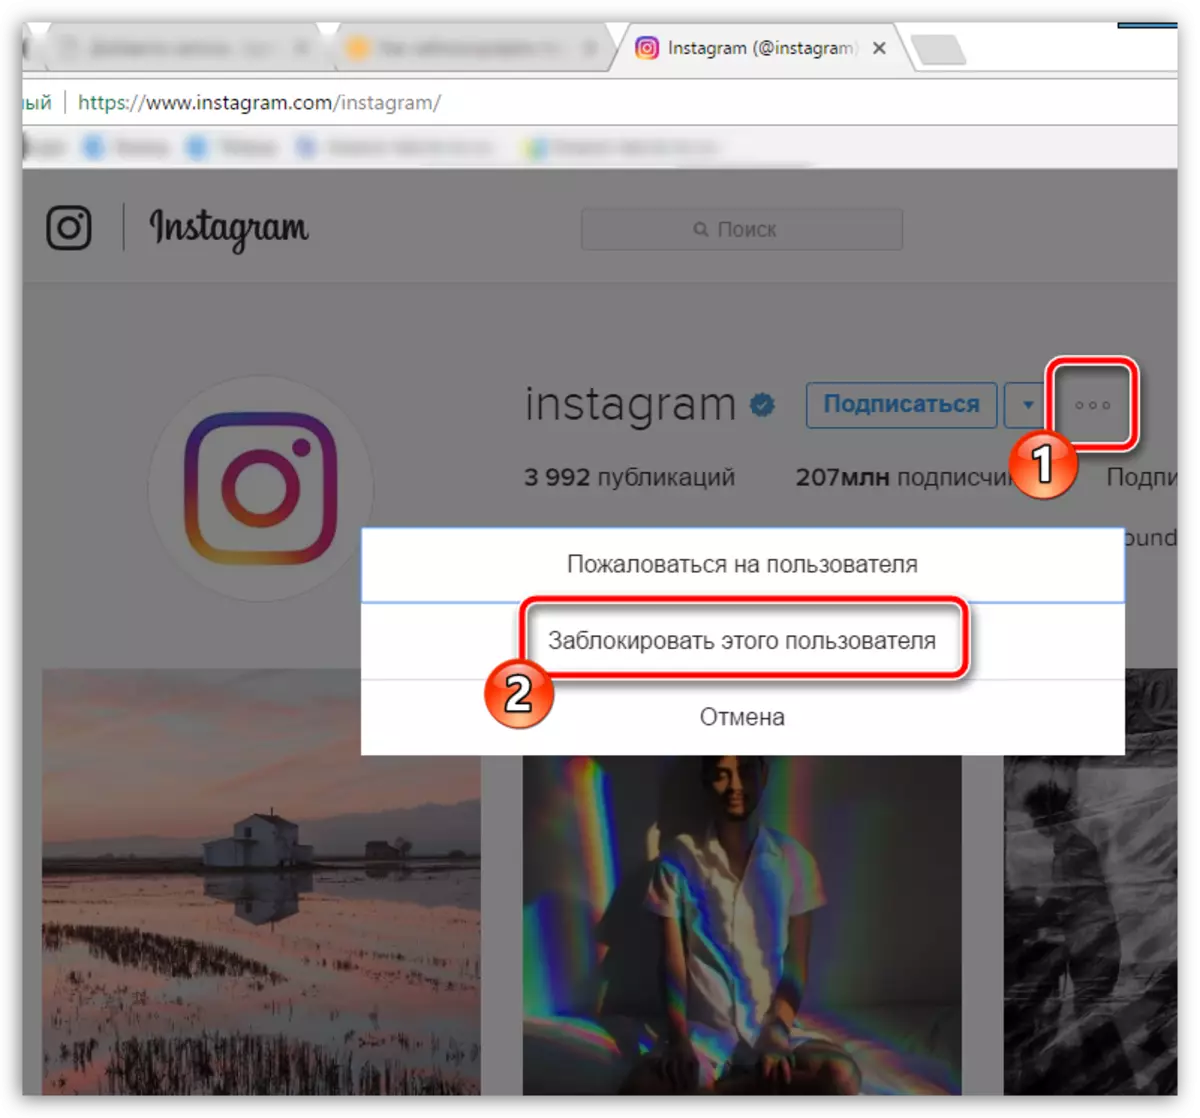 Instagram- ում օգտագործողին կողպելը համակարգչում